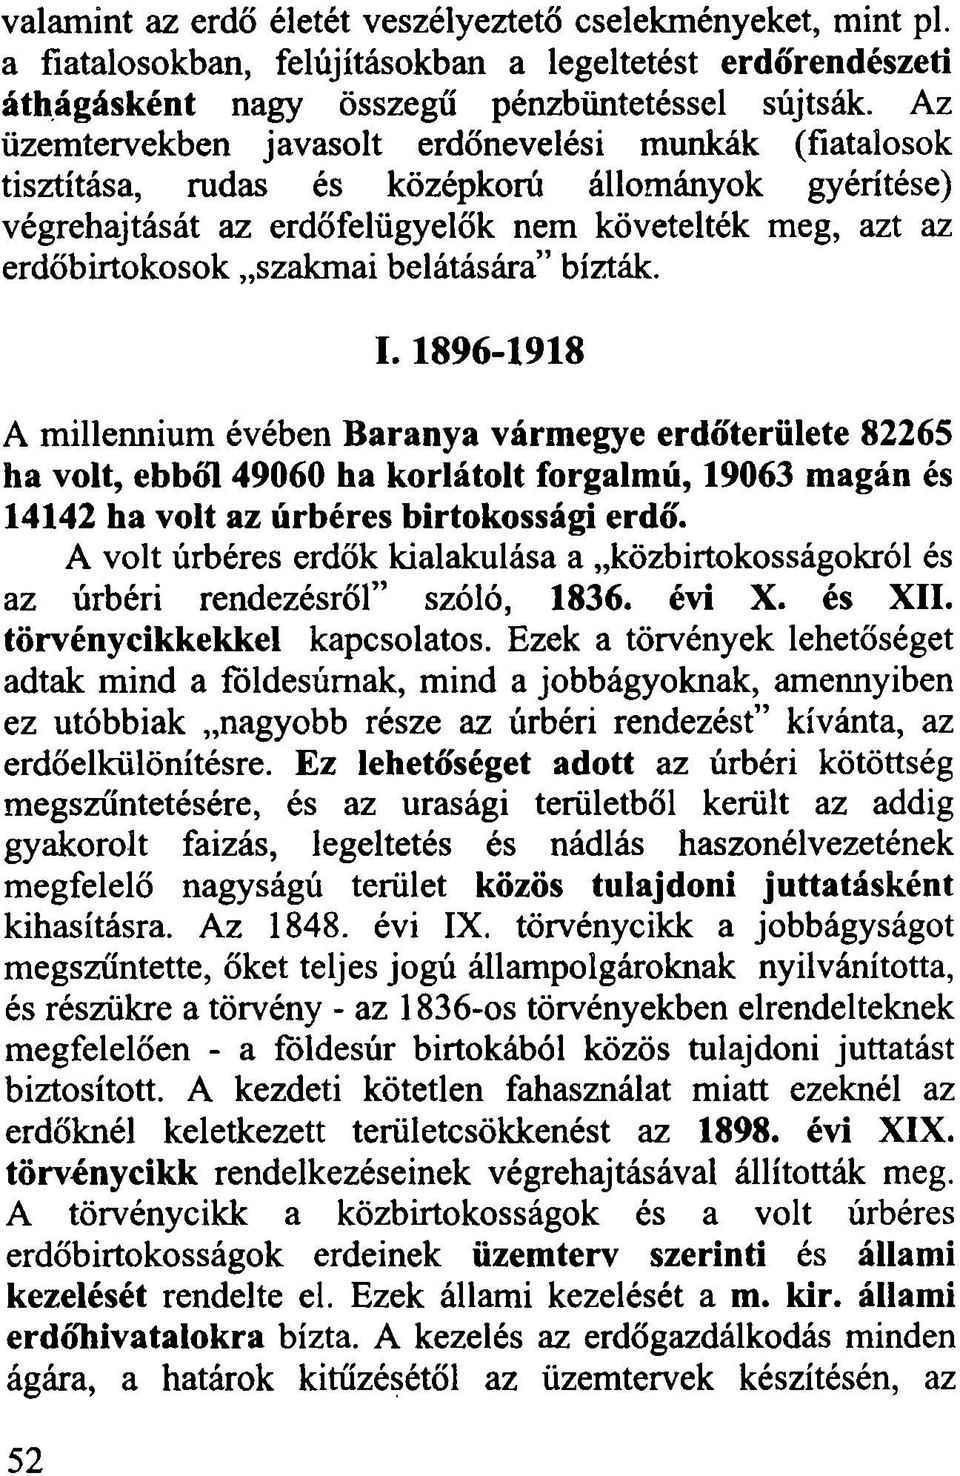 belátására bízták. 1.1896-1918 A millennium évében Baranya vármegye erdőterülete 82265 ha volt, ebből 49060 ha korlátolt forgalmú, 19063 magán és 14142 ha volt az úrbéres birtokossági erdő.